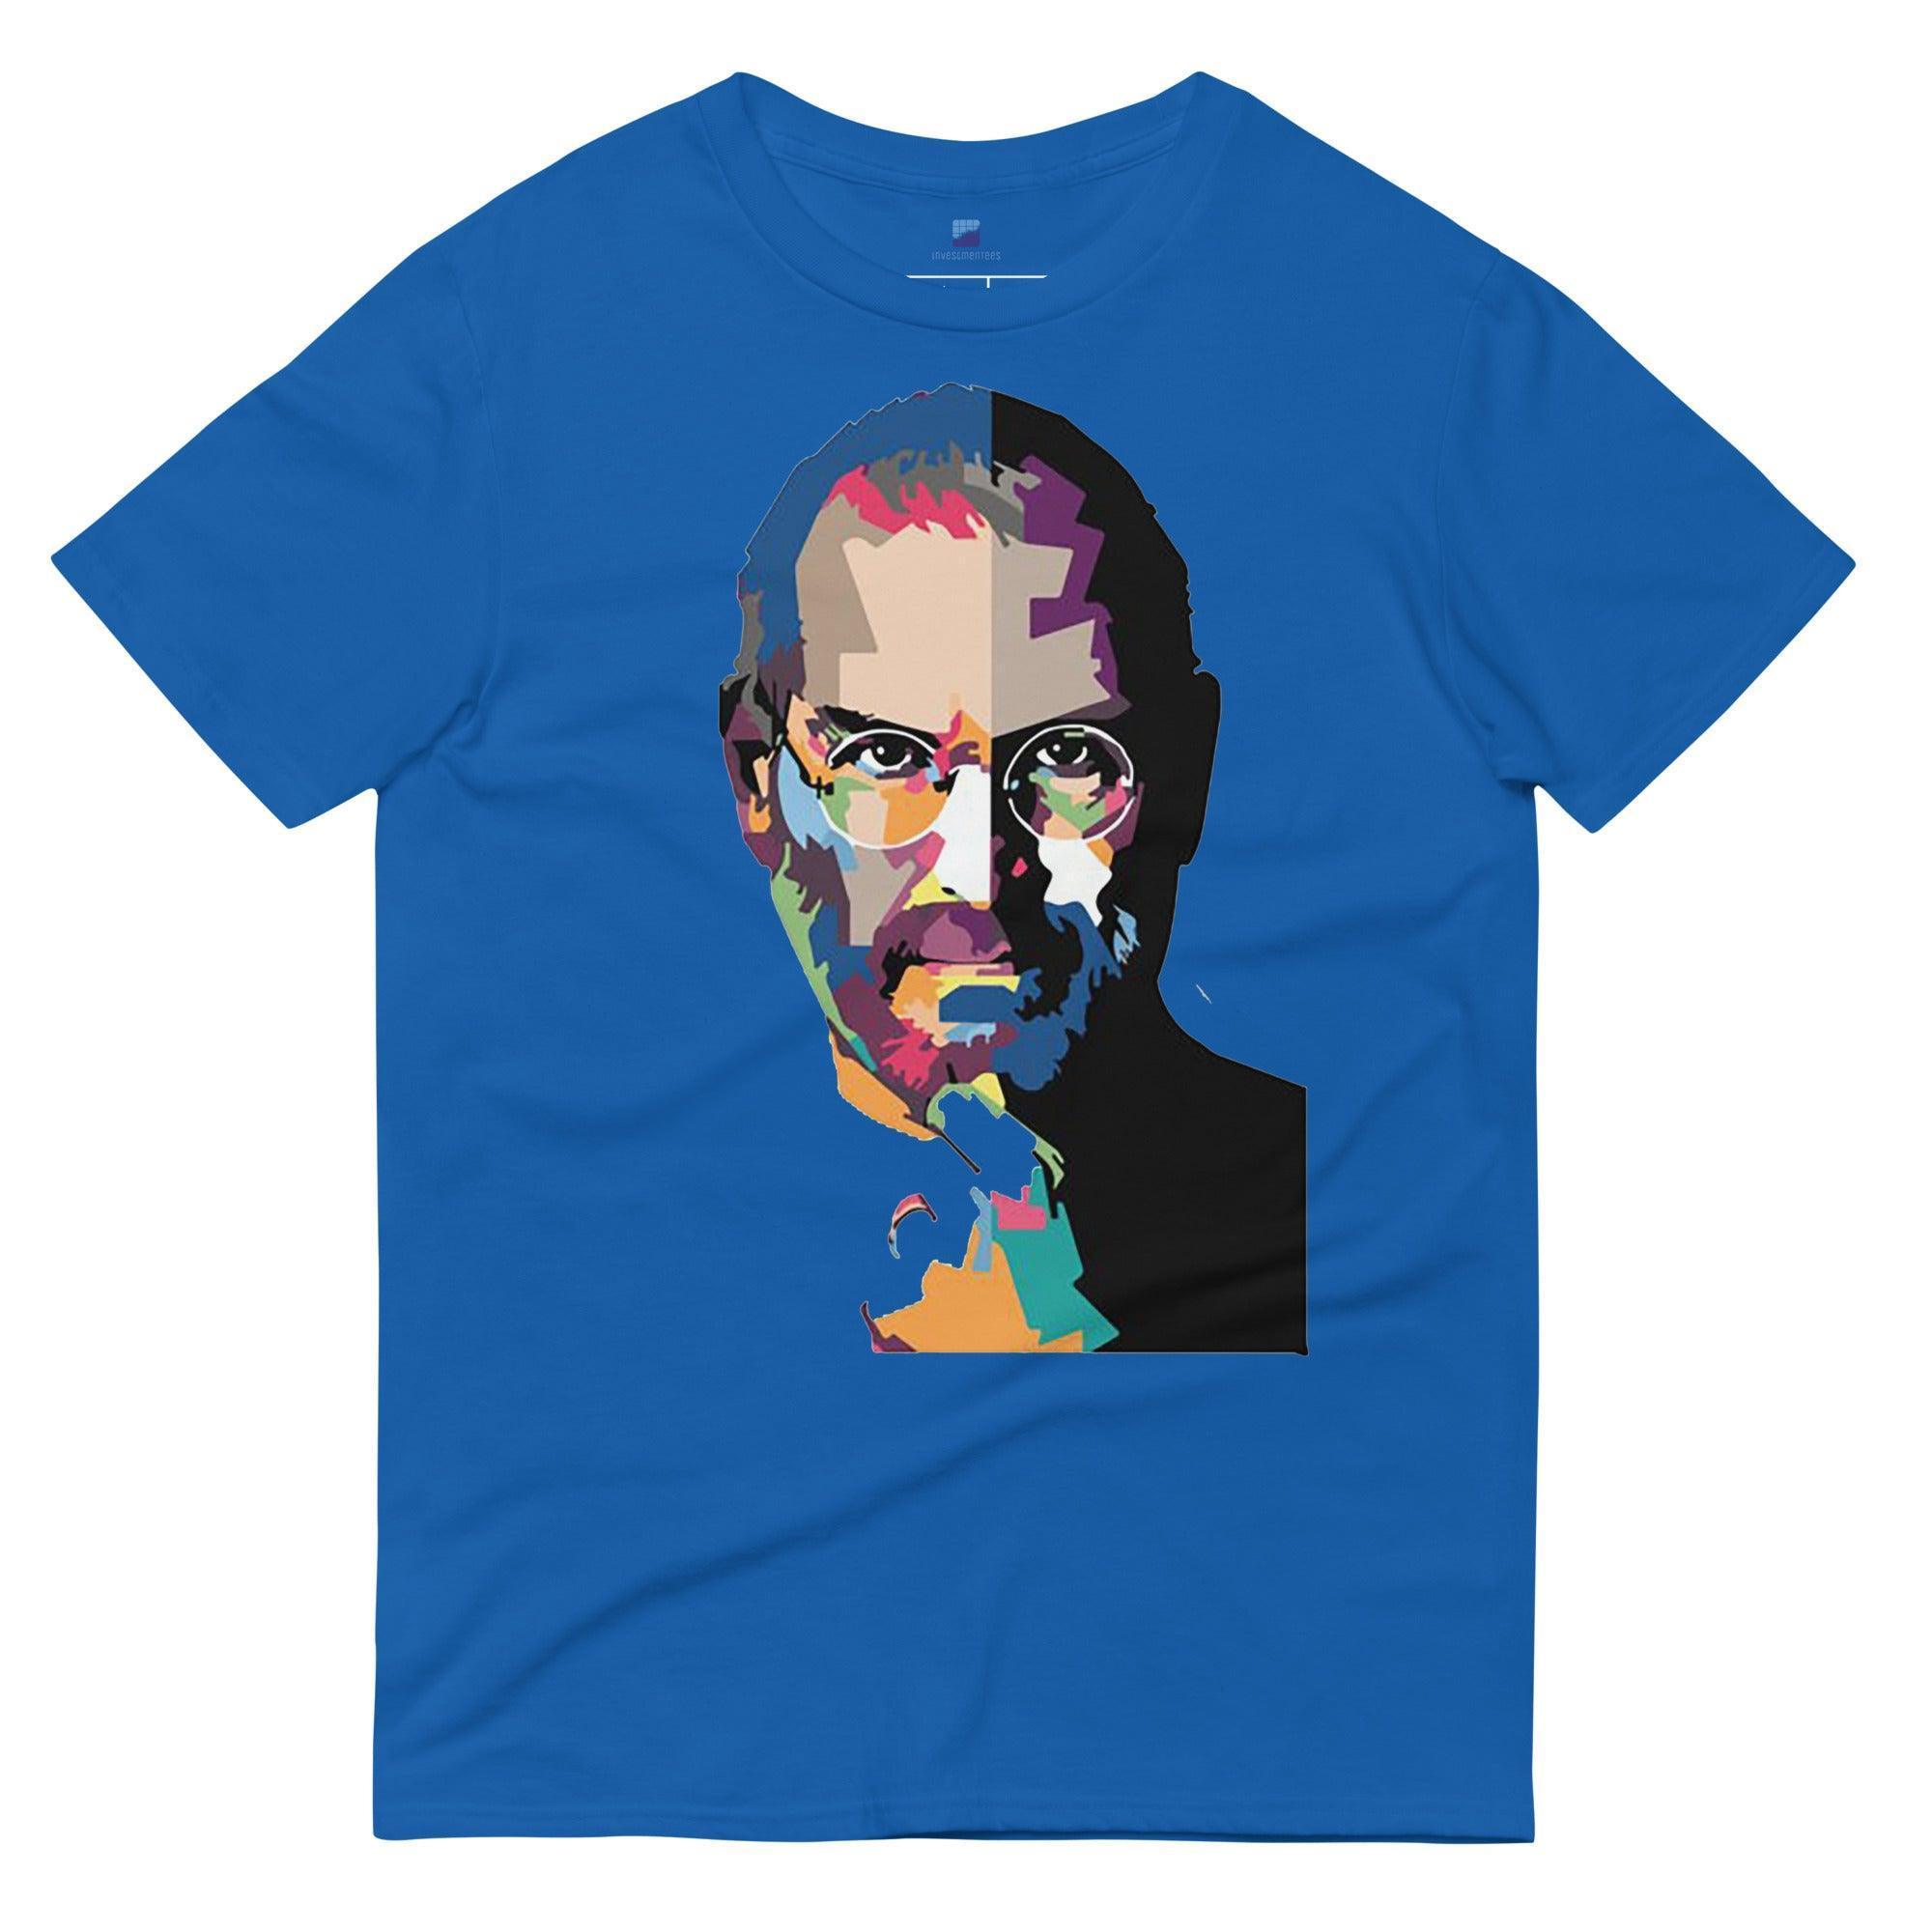 Steve Jobs Art T-Shirt - InvestmenTees